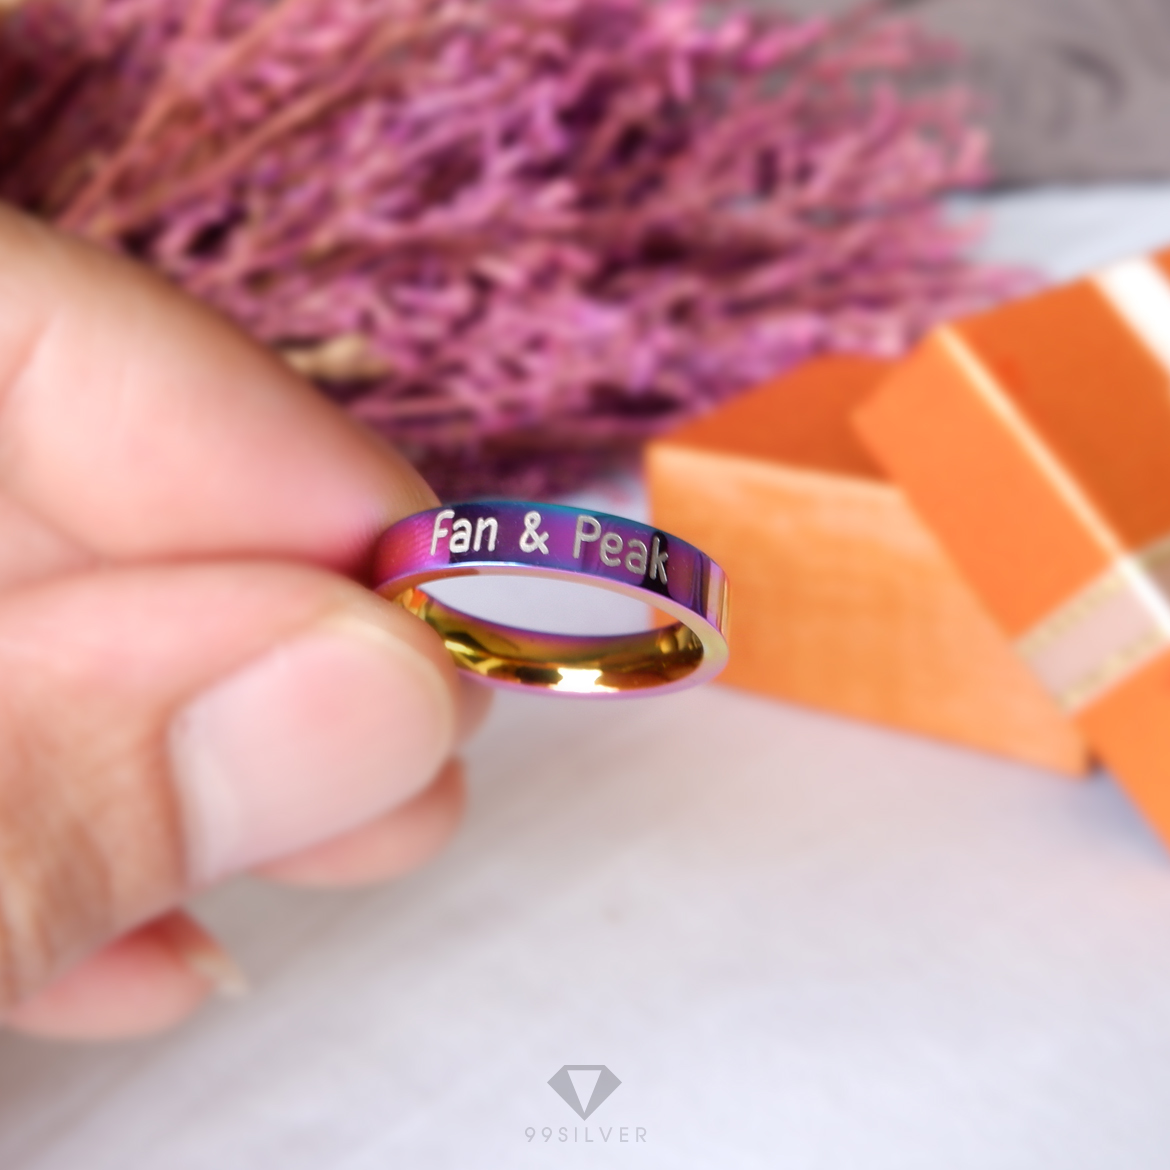 แหวนสแตนเลสไทเทเนี่ยมแท้ หน้ากว้าง 4 มิลลิเมตร ผิวเงาเรียบ ไดร์ฟสีรุ้งไทเท